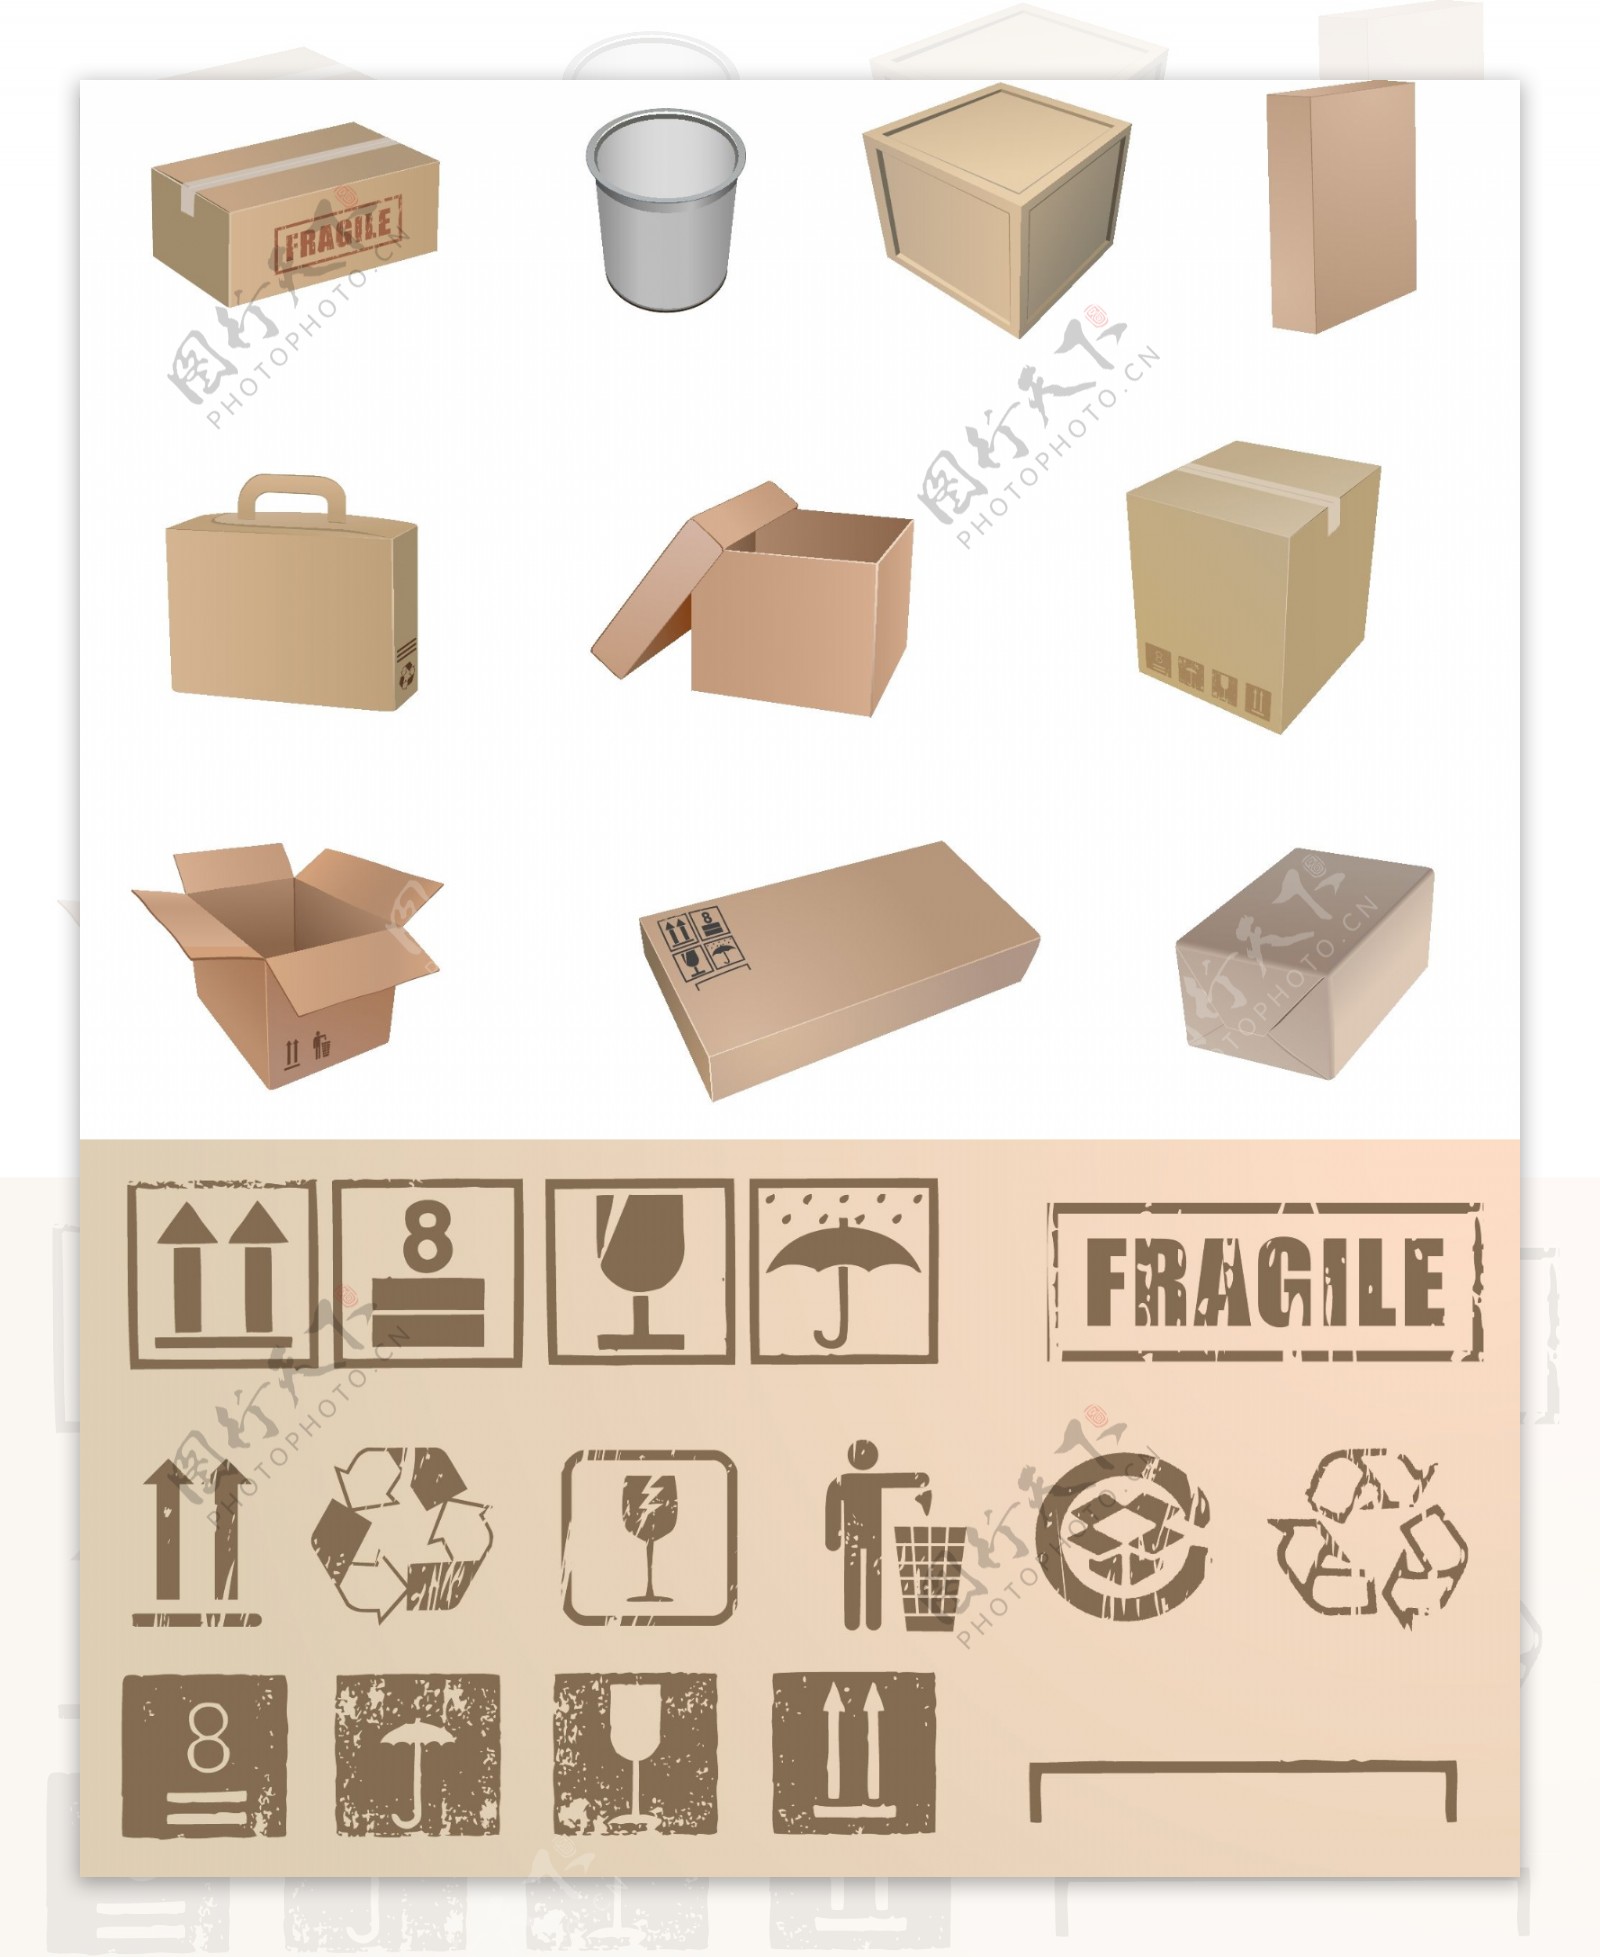 包装盒和符号矢量图形